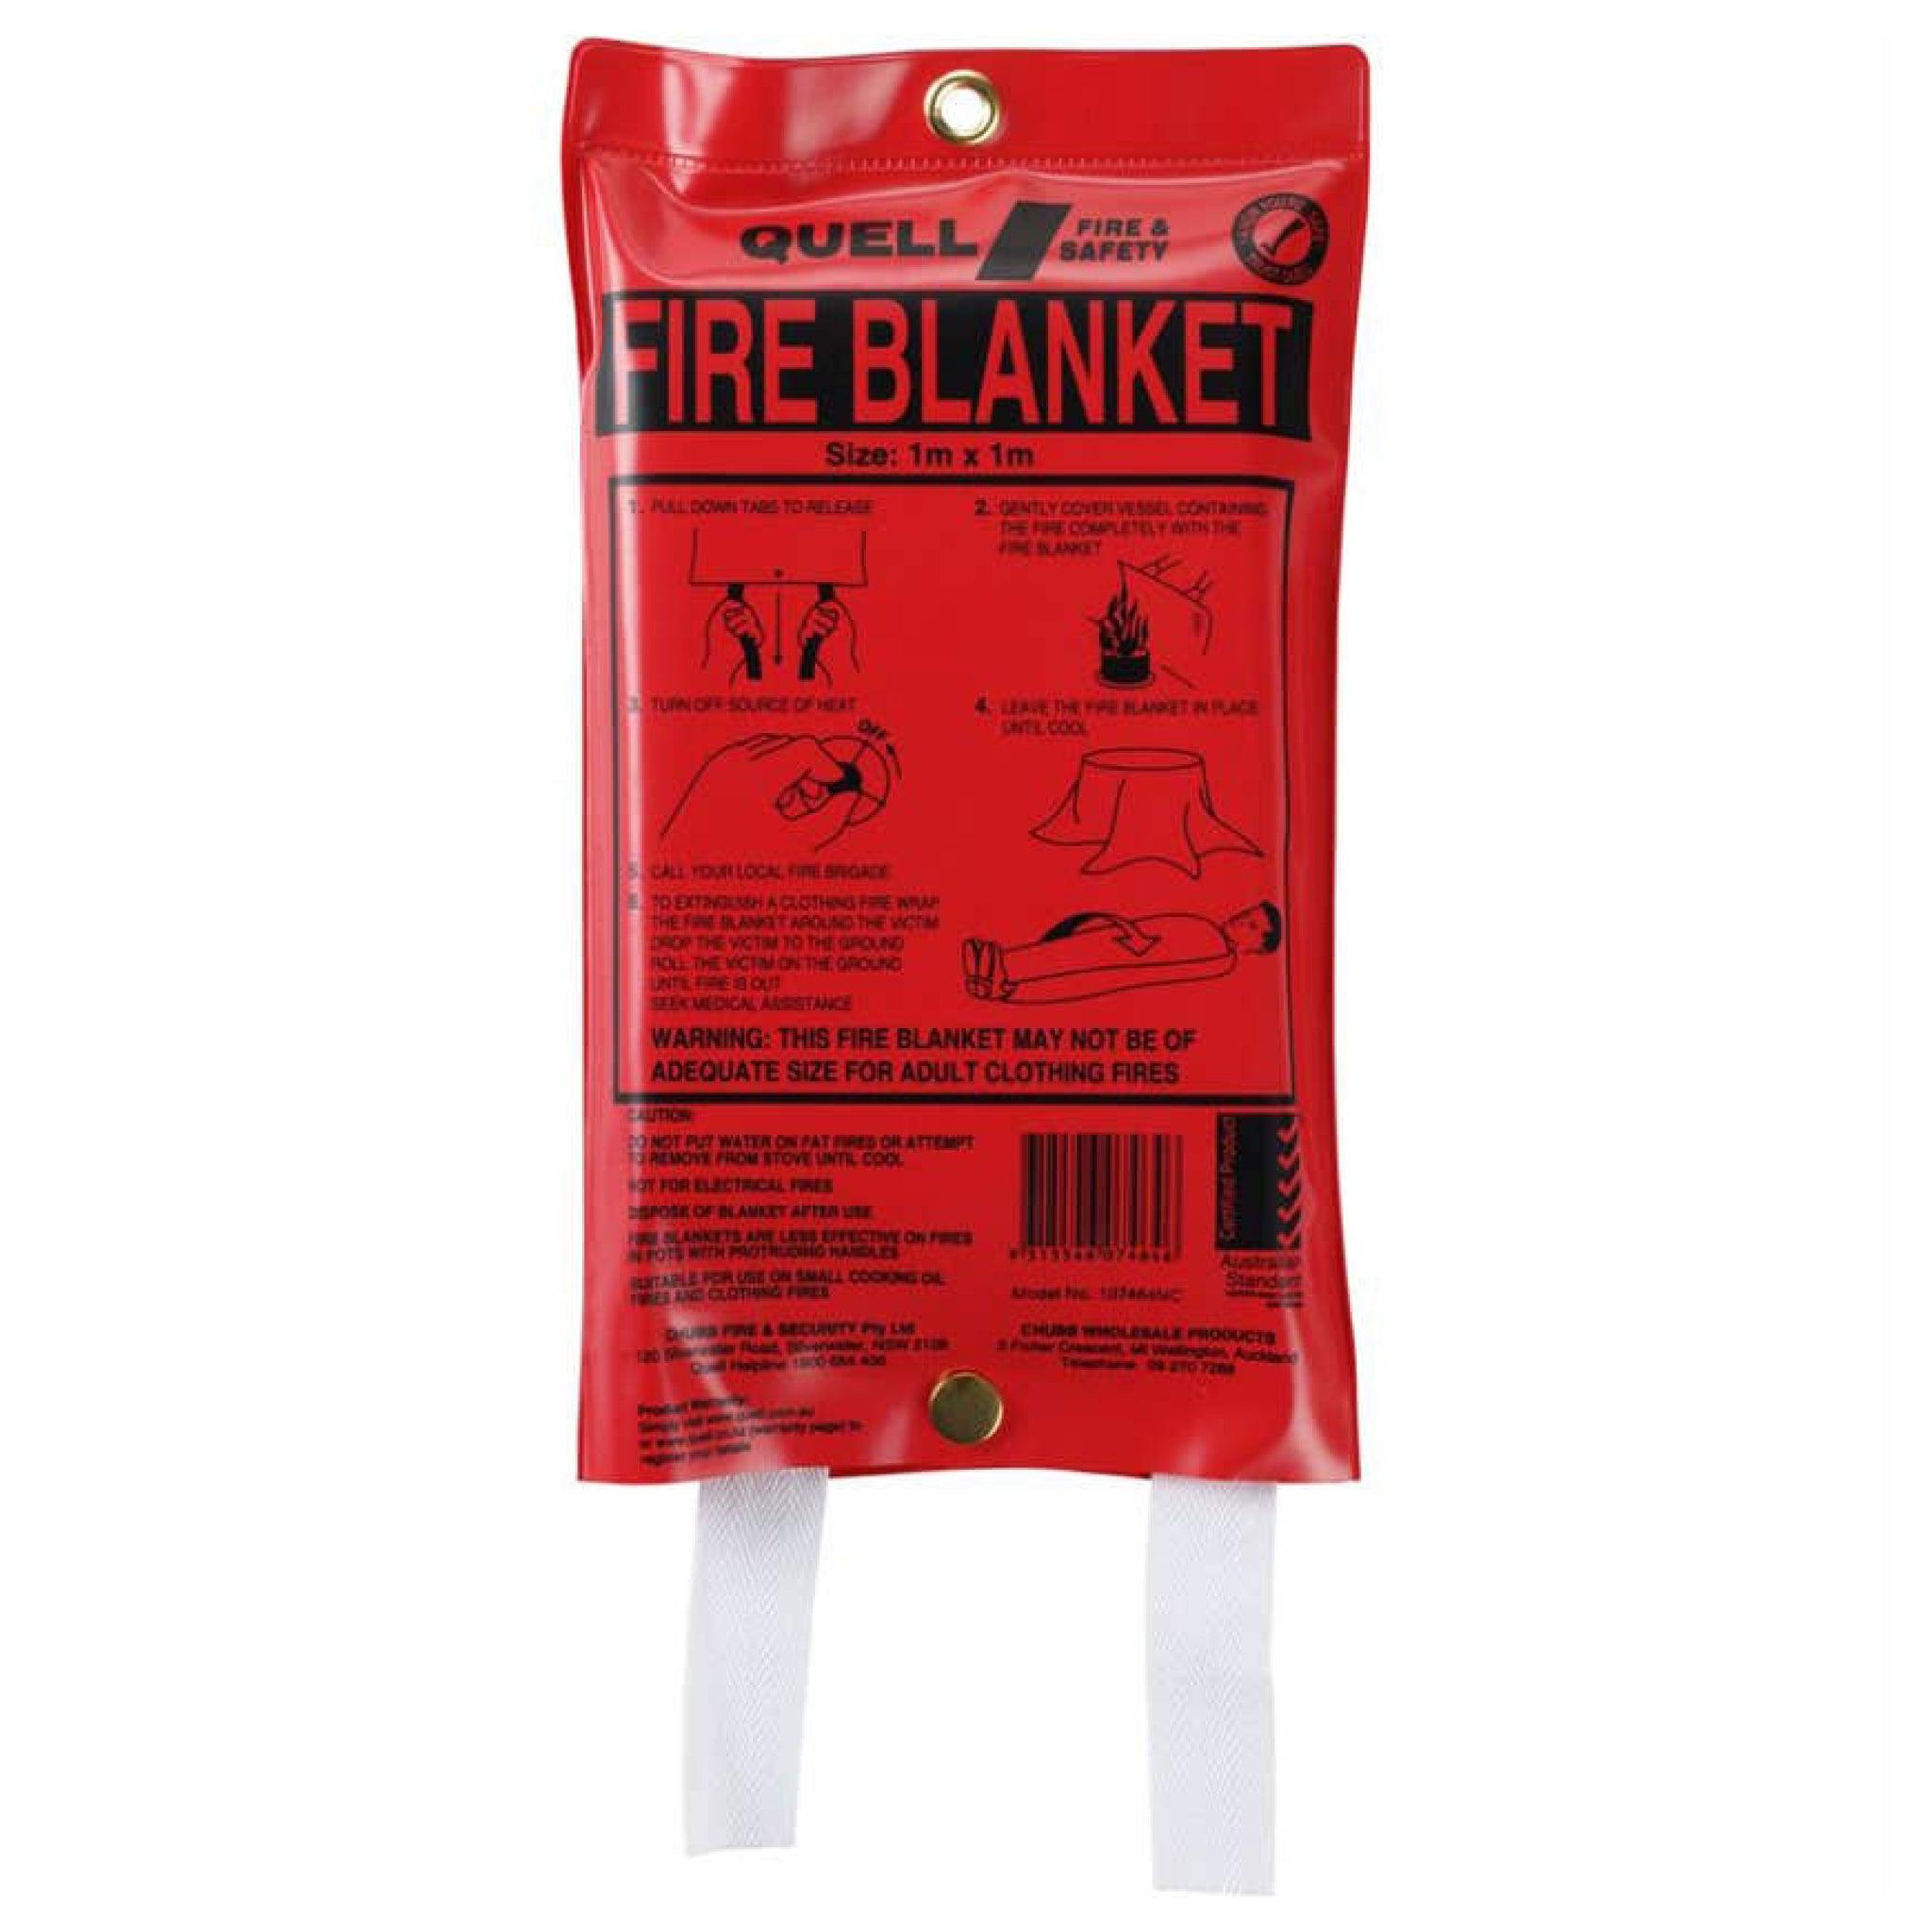 Quell Fire Blanket 1m x 1m - Aussie Traveller